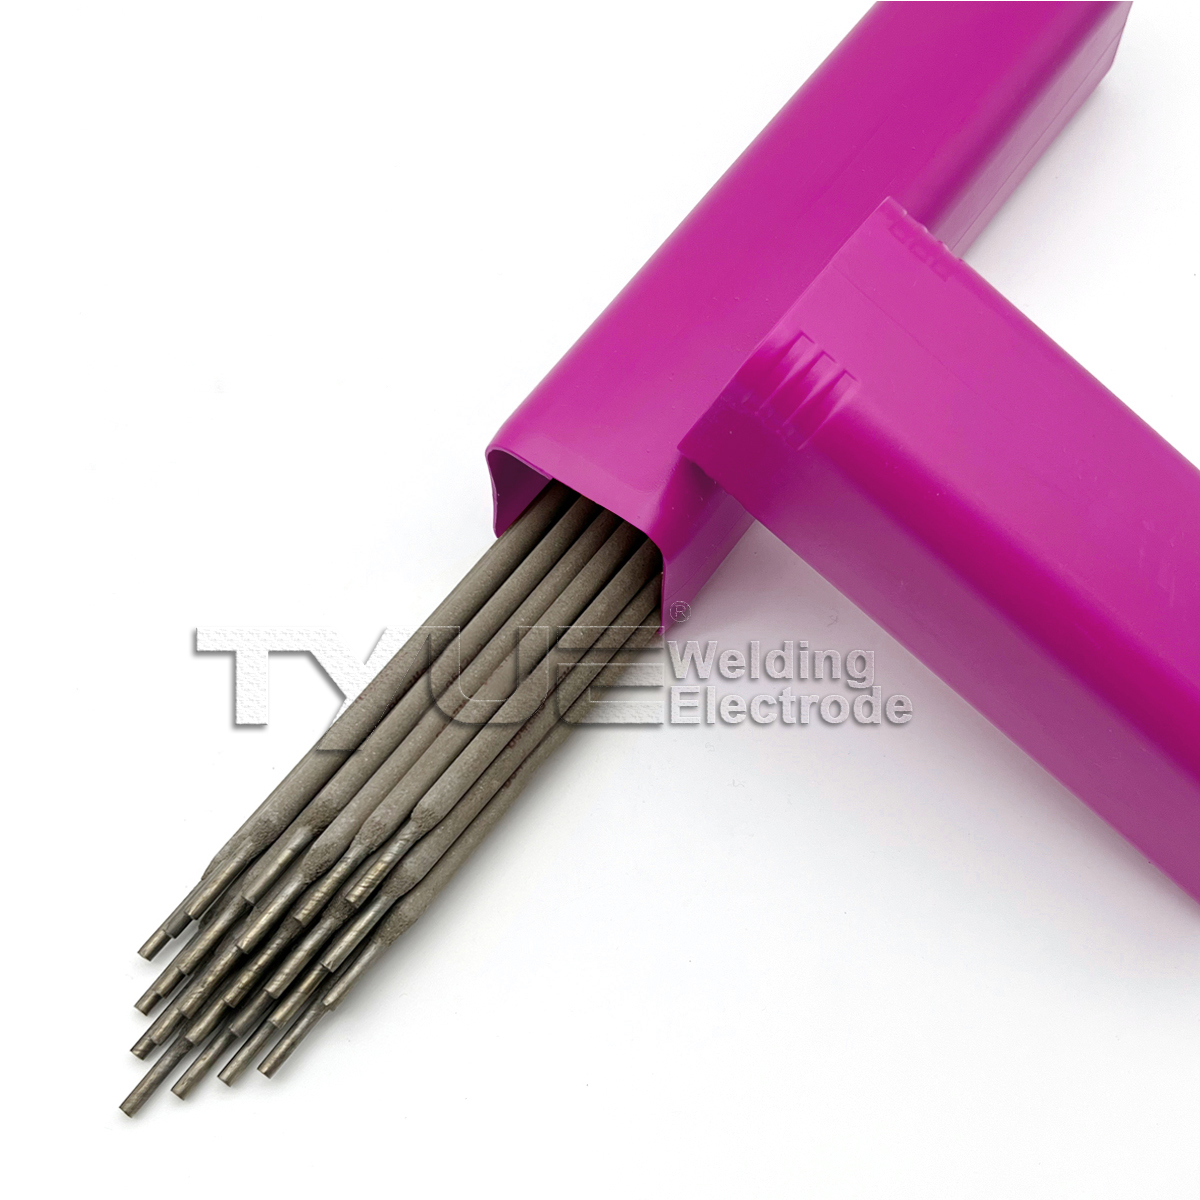 Hardfacing Welding Electrode DIN 8555 (E9-UM-250-KR) Surfacing Welding Electrode, Sanduna Welding